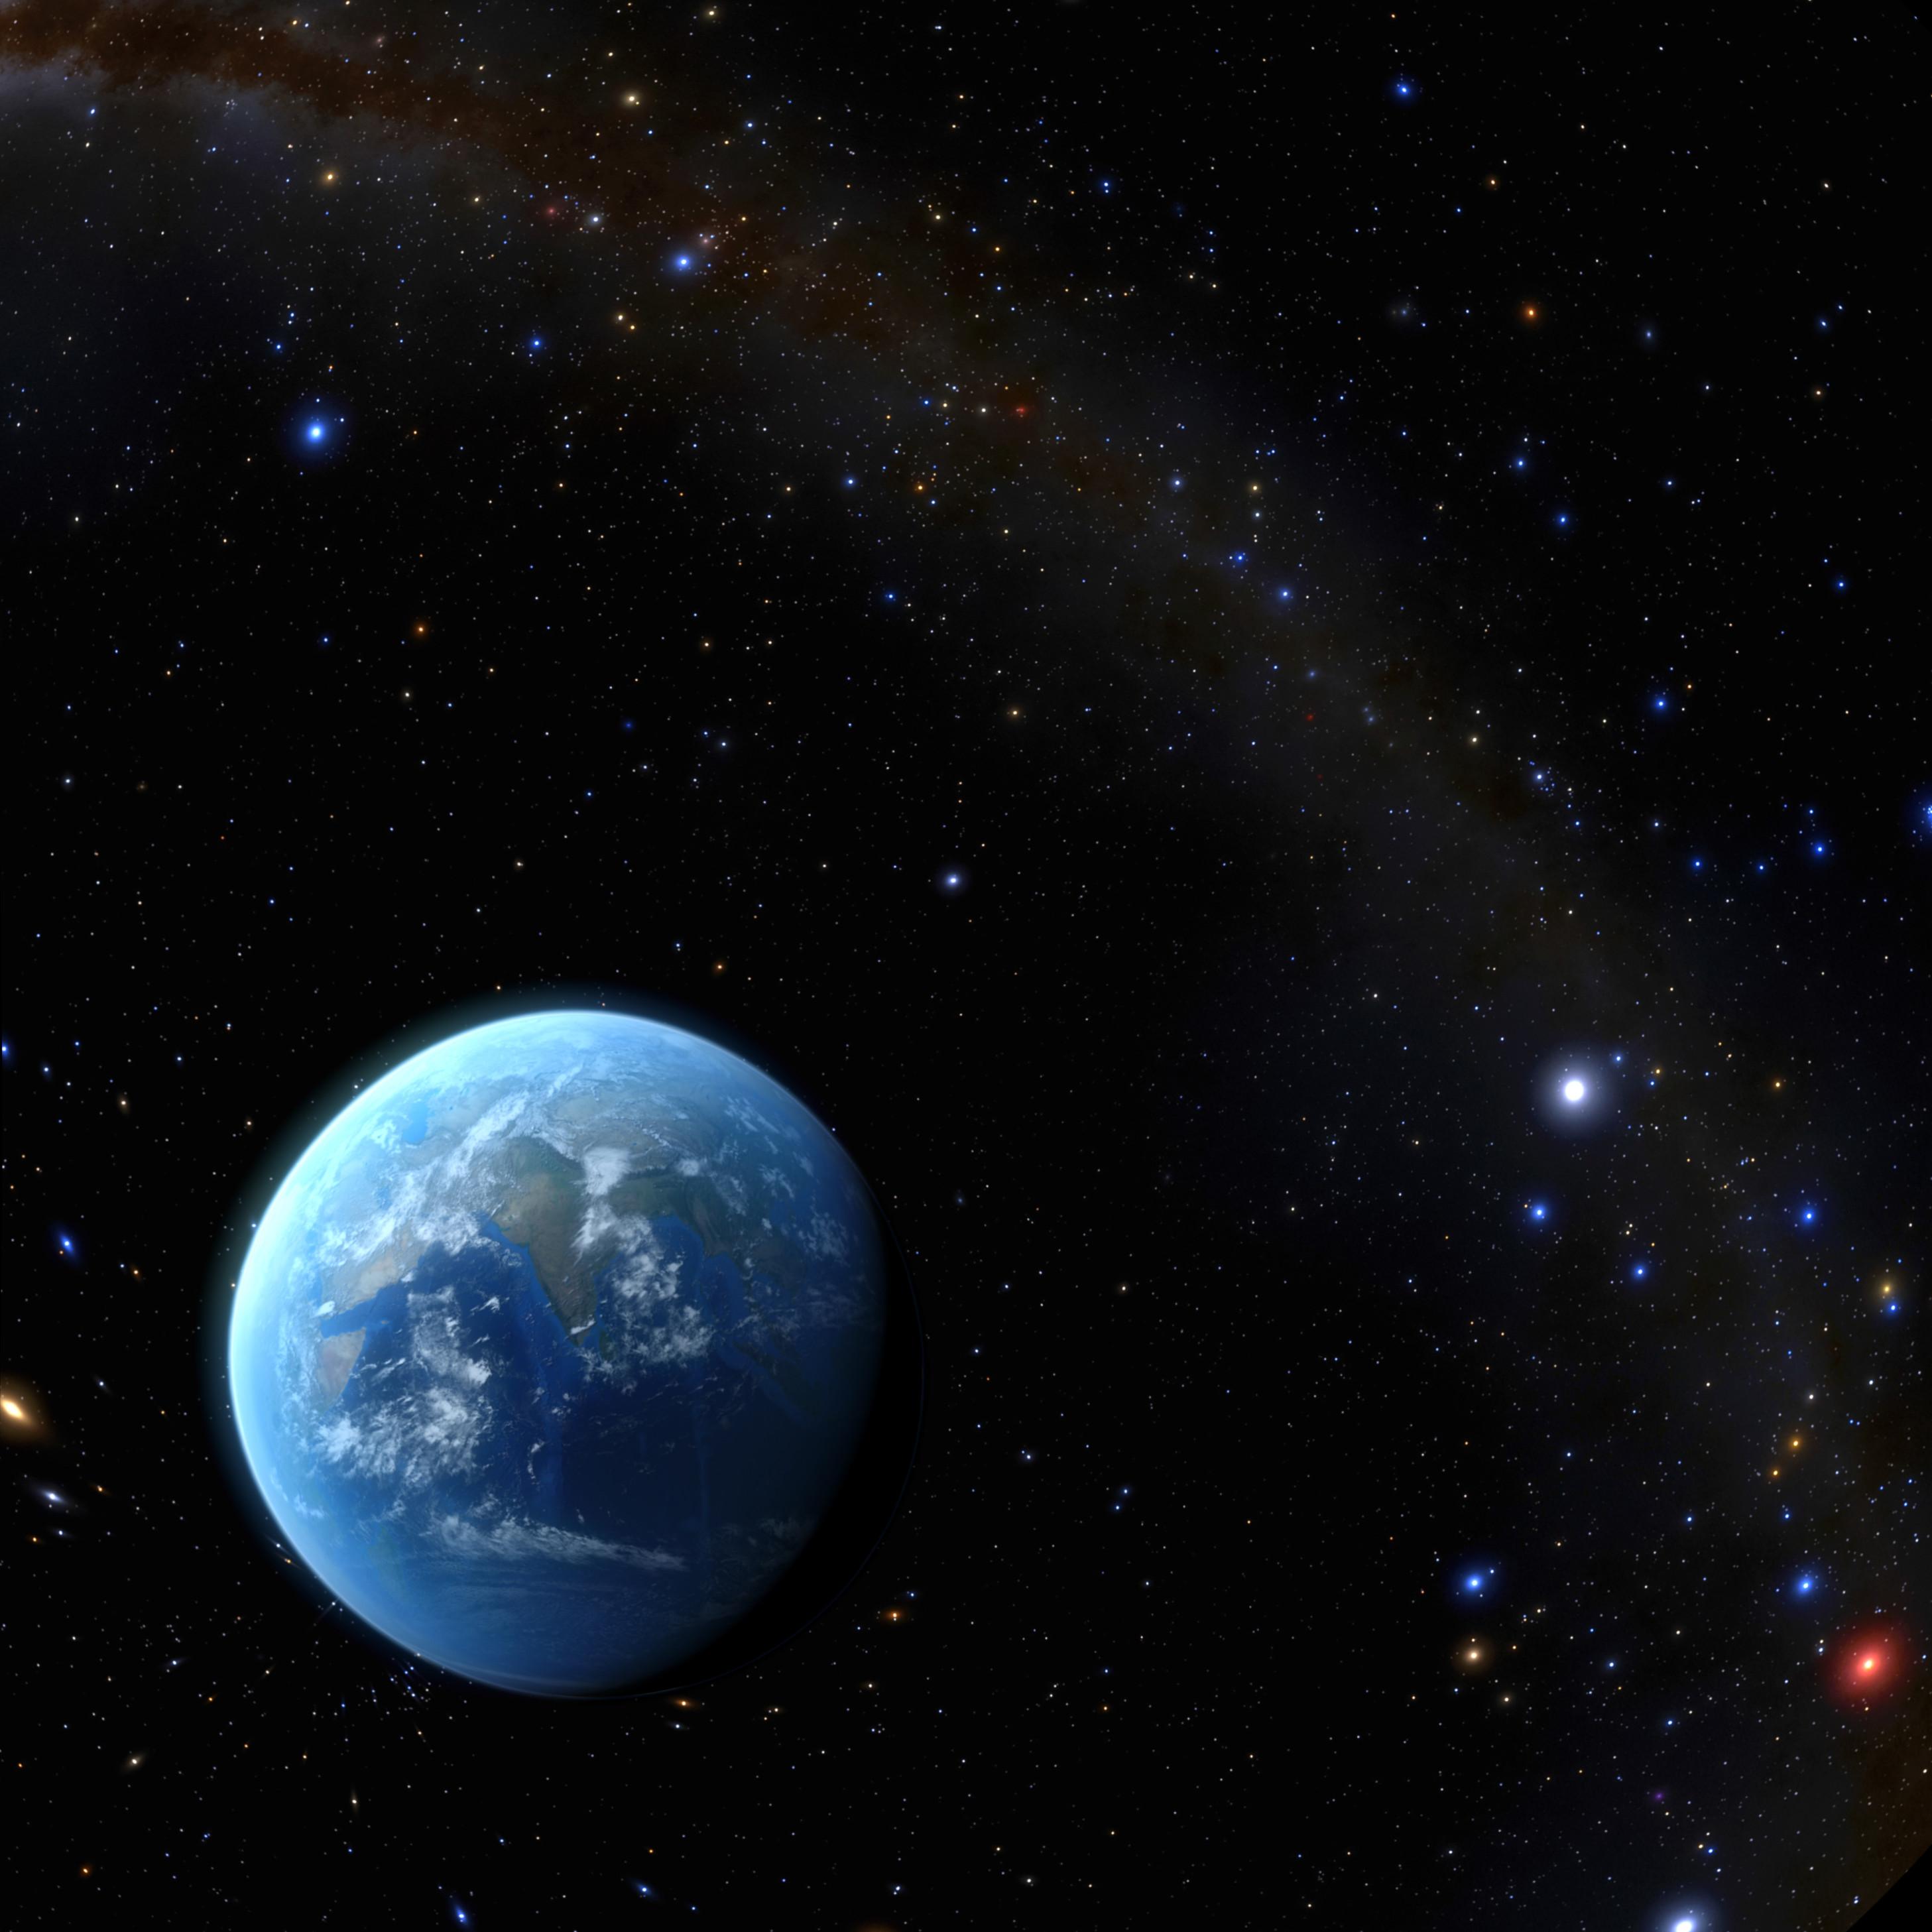 地球在太空中的概念圖。地球就像浩瀚宇宙裏的藍色綠洲，是唯一已知有生命存在的地方。（圖片來源：歐洲南方天文台）